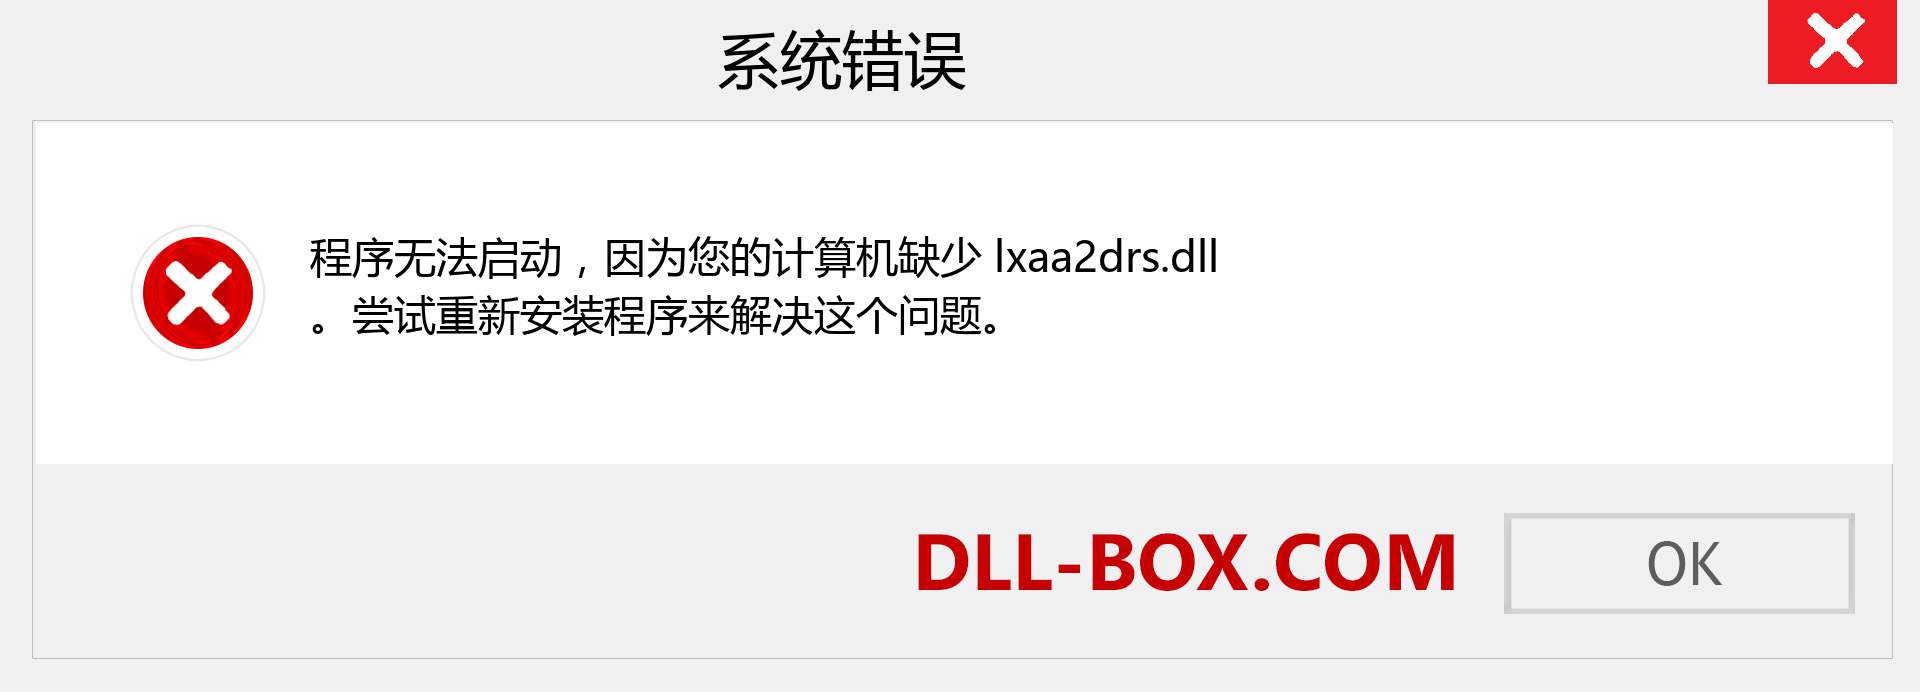 lxaa2drs.dll 文件丢失？。 适用于 Windows 7、8、10 的下载 - 修复 Windows、照片、图像上的 lxaa2drs dll 丢失错误